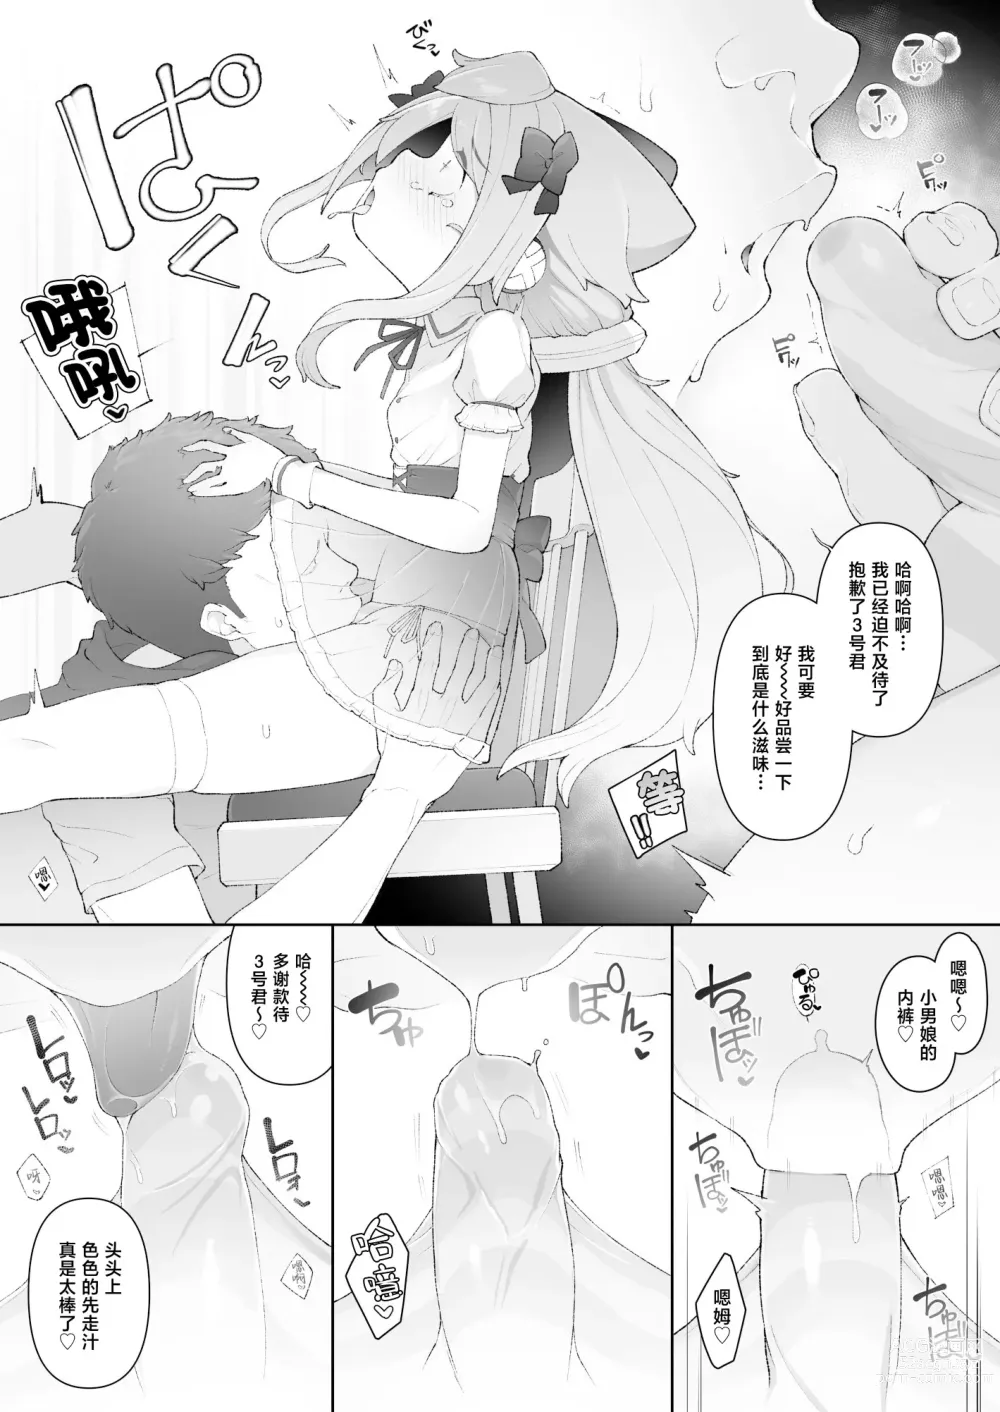 Page 6 of doujinshi HakaDol 3-gou-kun Tokusei Himitsu no Ura Menu!!